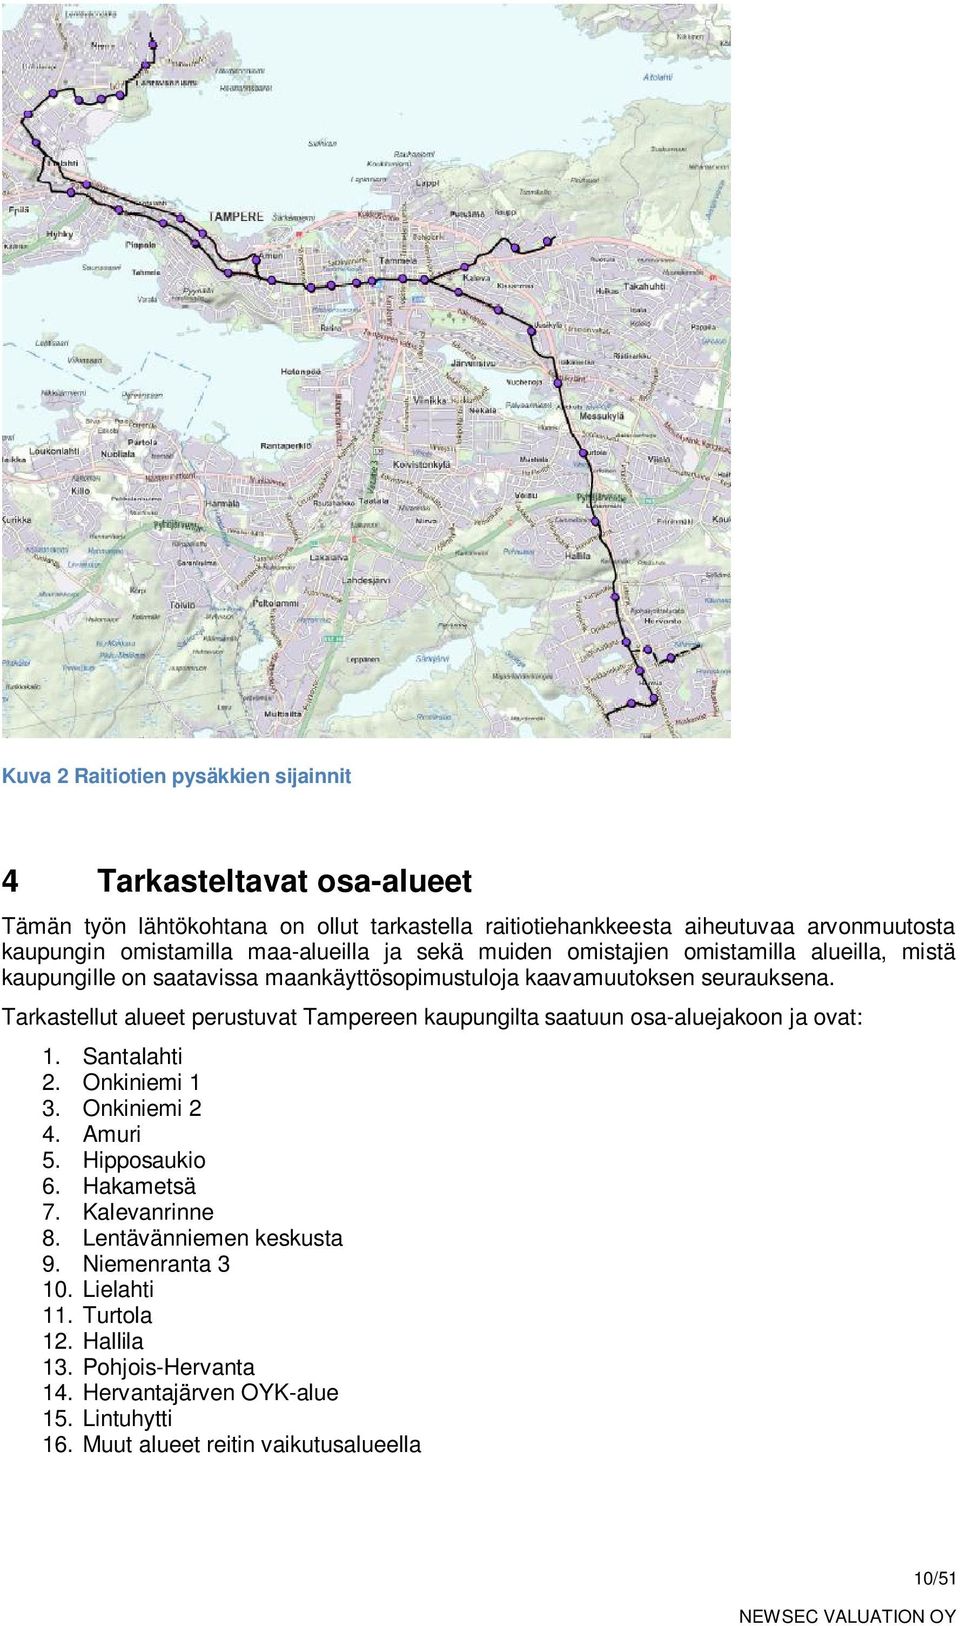 Tarkastellut alueet perustuvat Tampereen kaupungilta saatuun osa-aluejakoon ja ovat: 1. Santalahti 2. Onkiniemi 1 3. Onkiniemi 2 4. Amuri 5. Hipposaukio 6. Hakametsä 7.